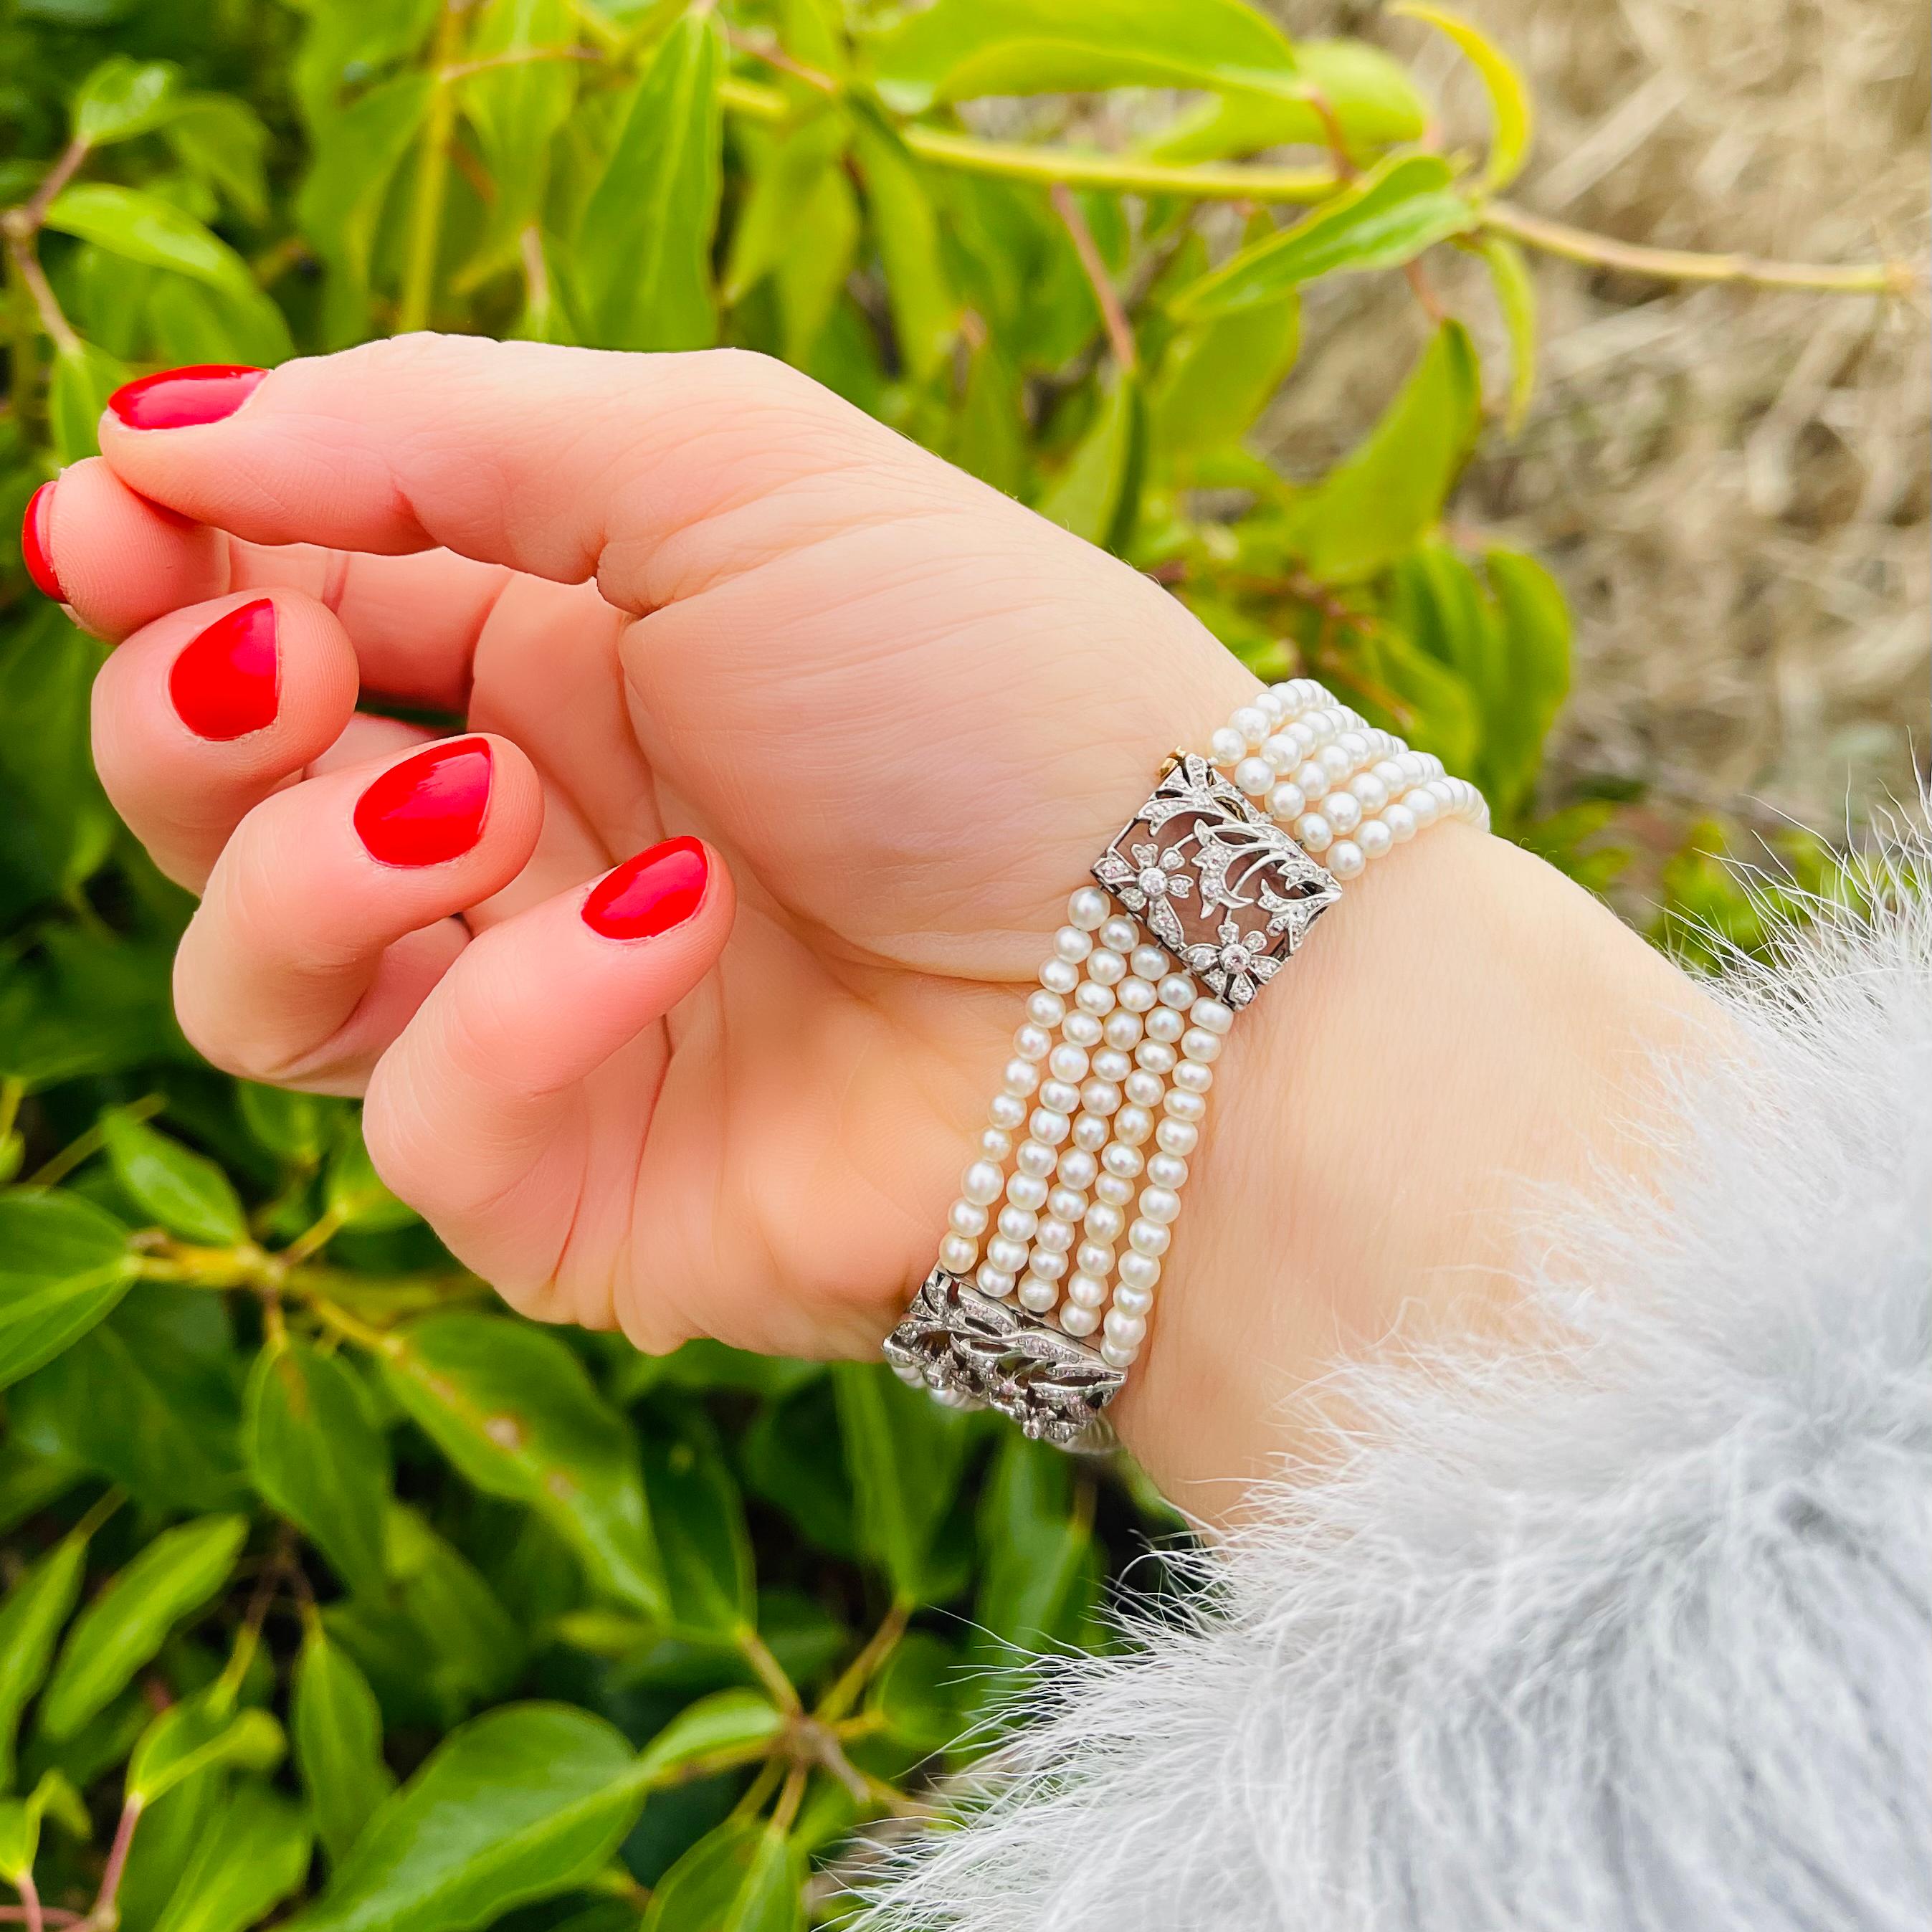 Voici l'incarnation du luxe et de l'élégance, le bracelet en perles naturelles d'Arte Antiques PEARLS. 

Ce bijou exquis est fabriqué à partir des matériaux les plus fins et affiche un design intemporel qui ne manquera pas d'impressionner.
Le